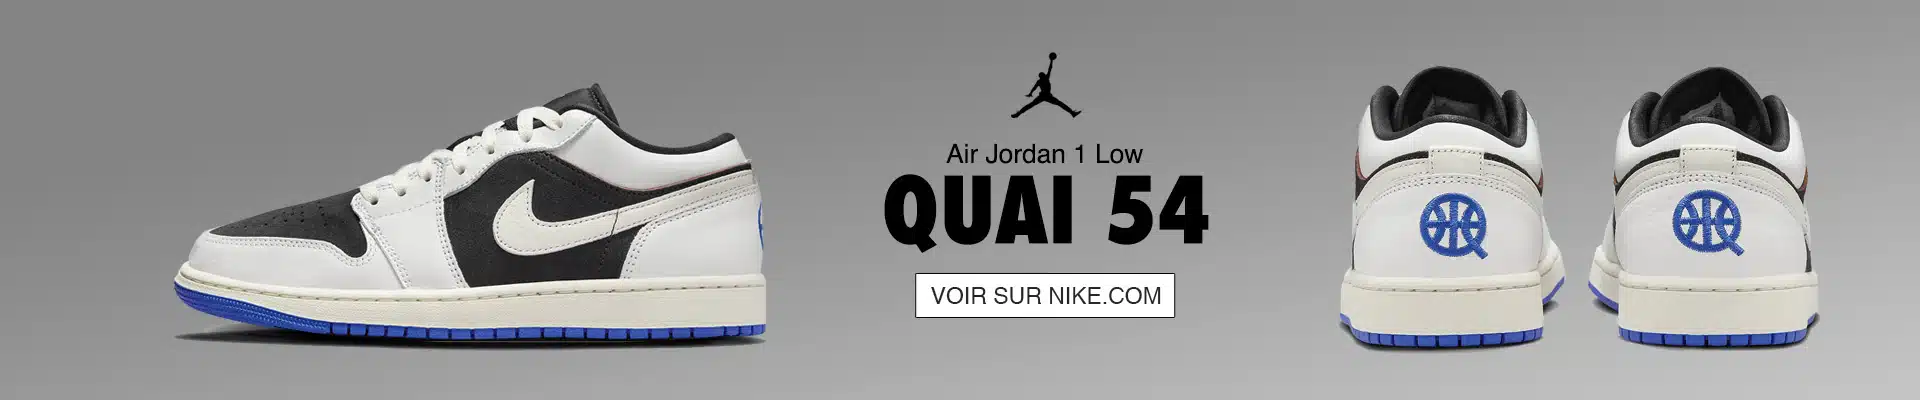 Nike logo details Quai 54